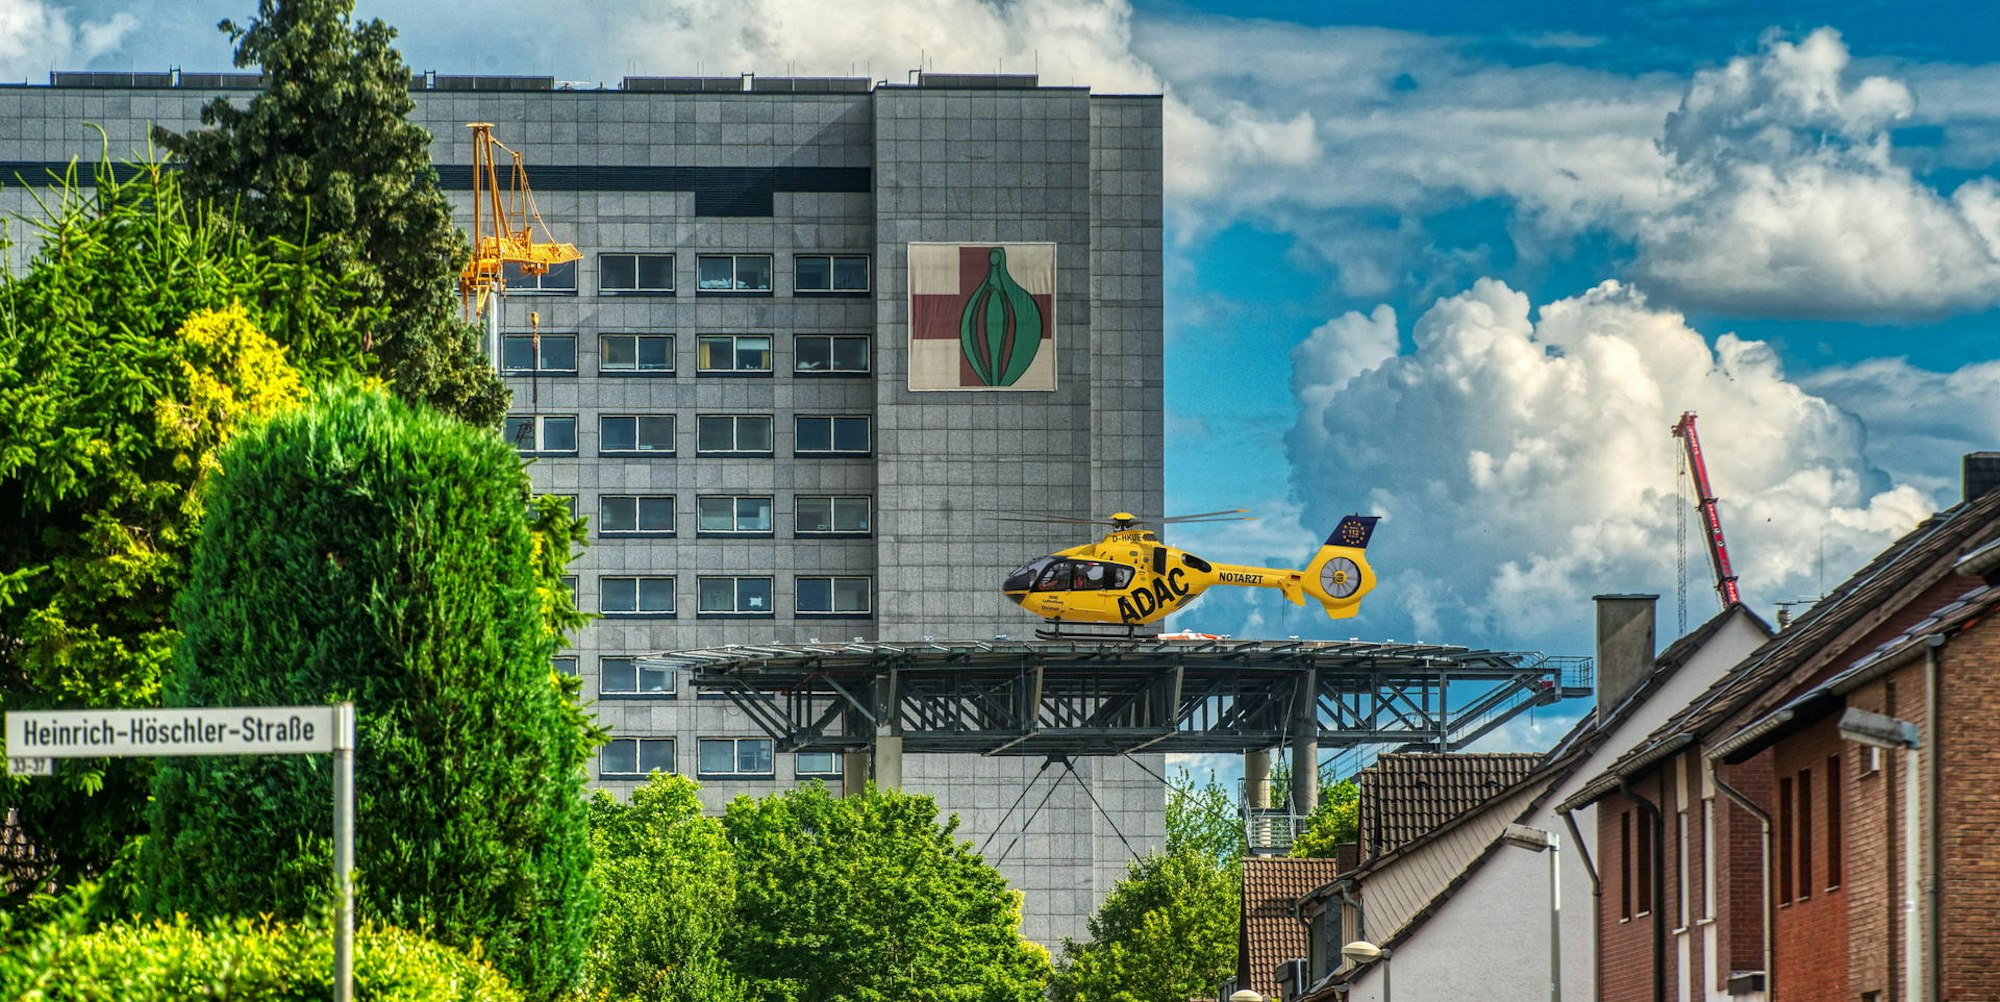 Ende des Jahres soll der Landeplatz am Frechener Krankenhaus fertig sein. Dann könnten die Helikopter dort landen.